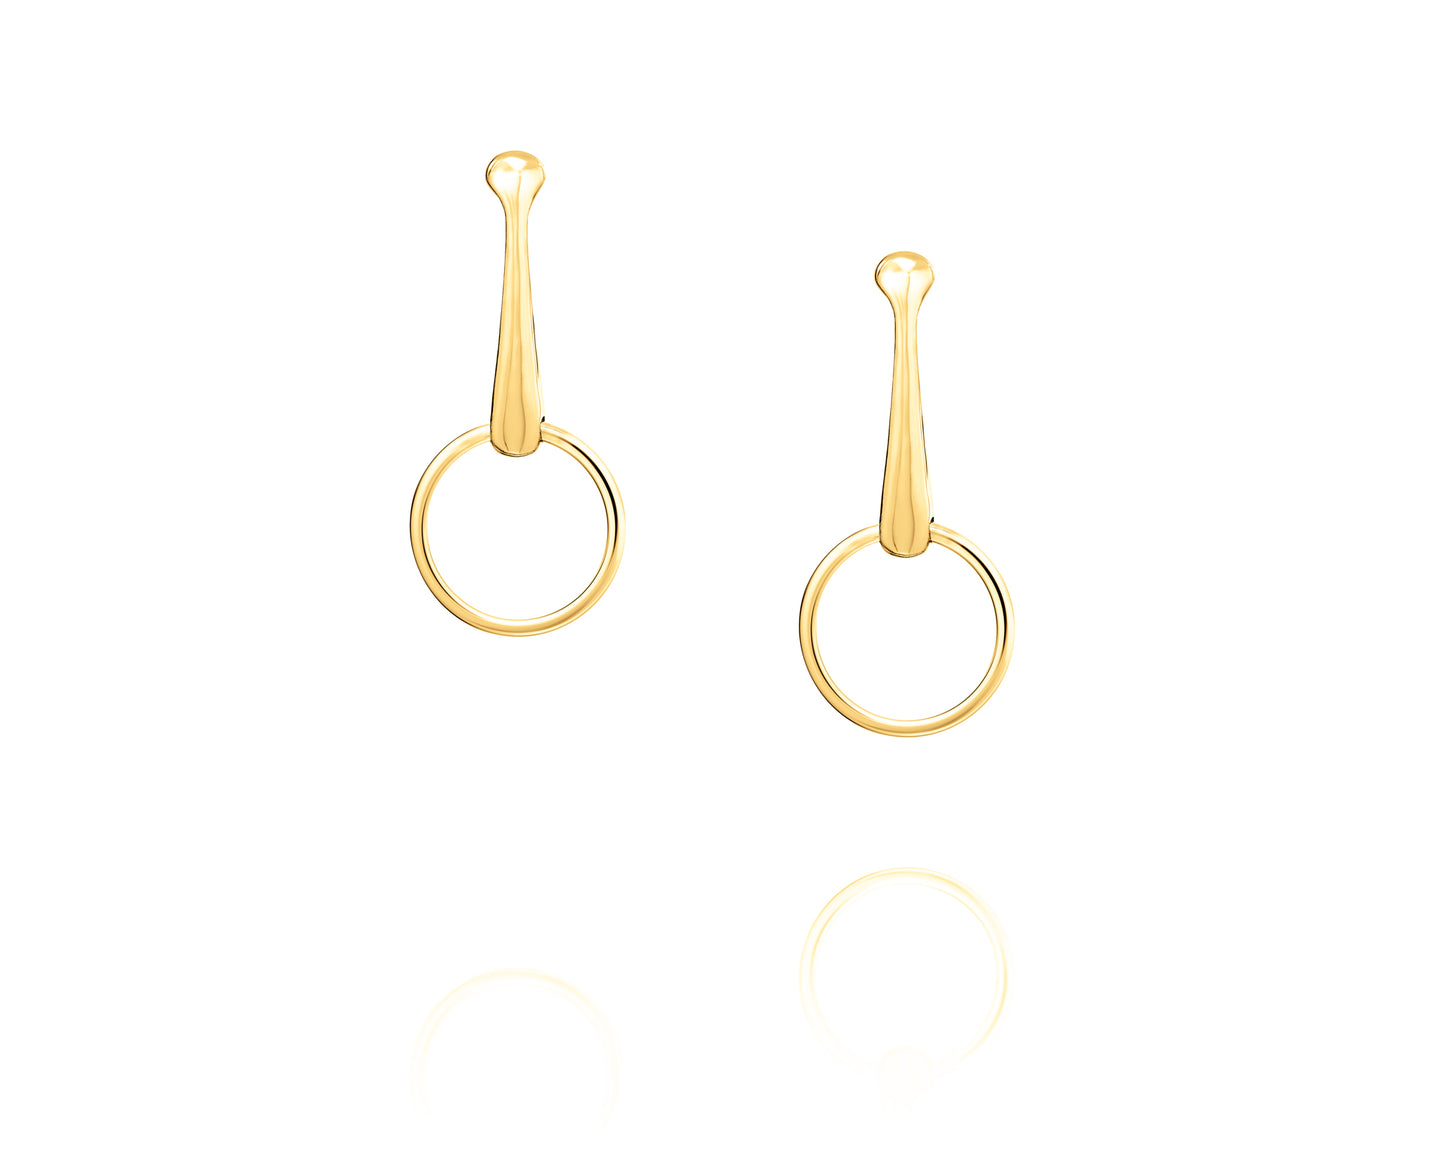 Snaffle Bit Statement Earrings – Vincent Peach Fine Jewelry